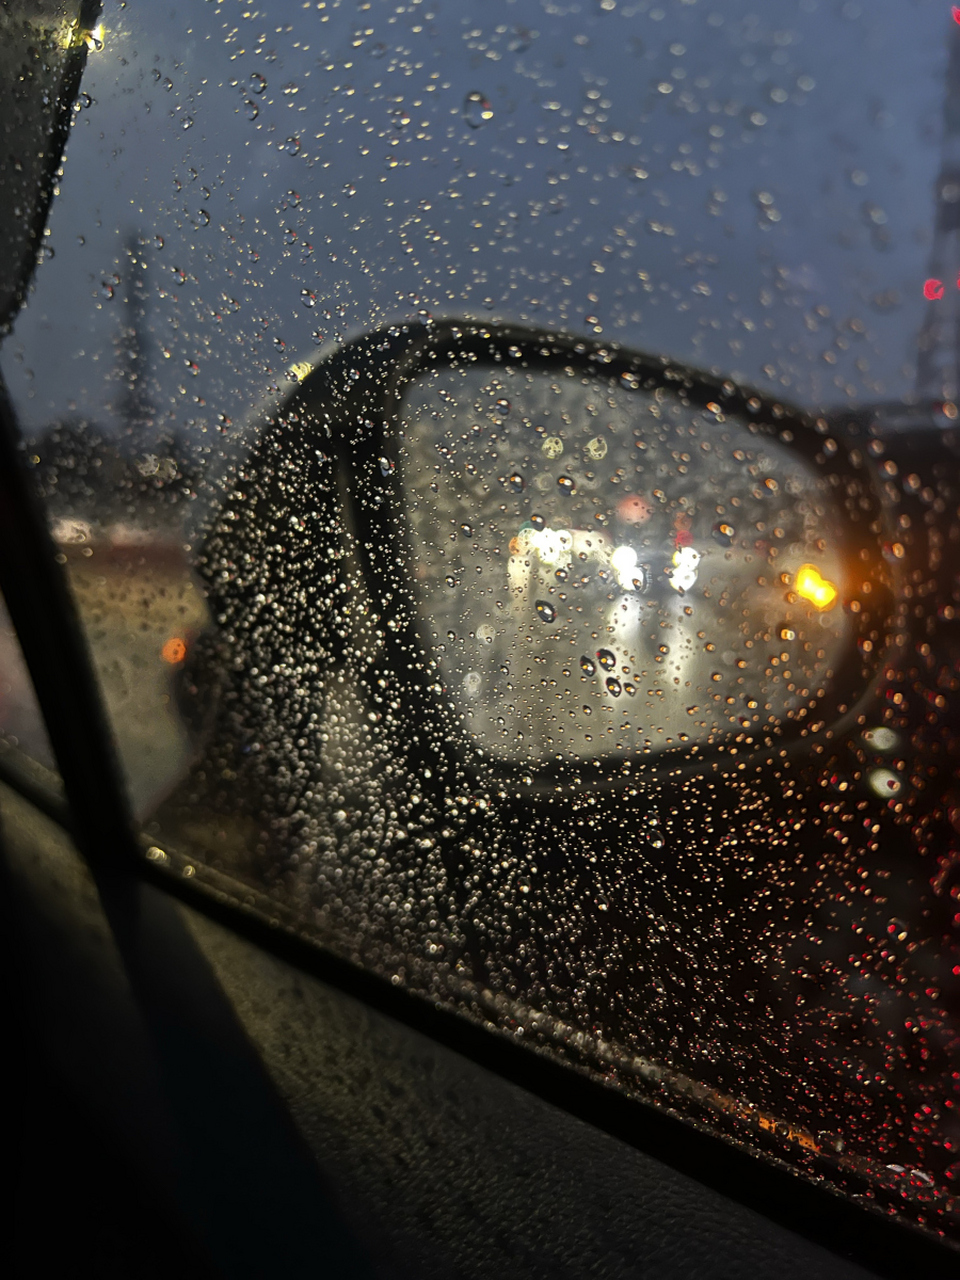 夜晚下雨车窗图片图片